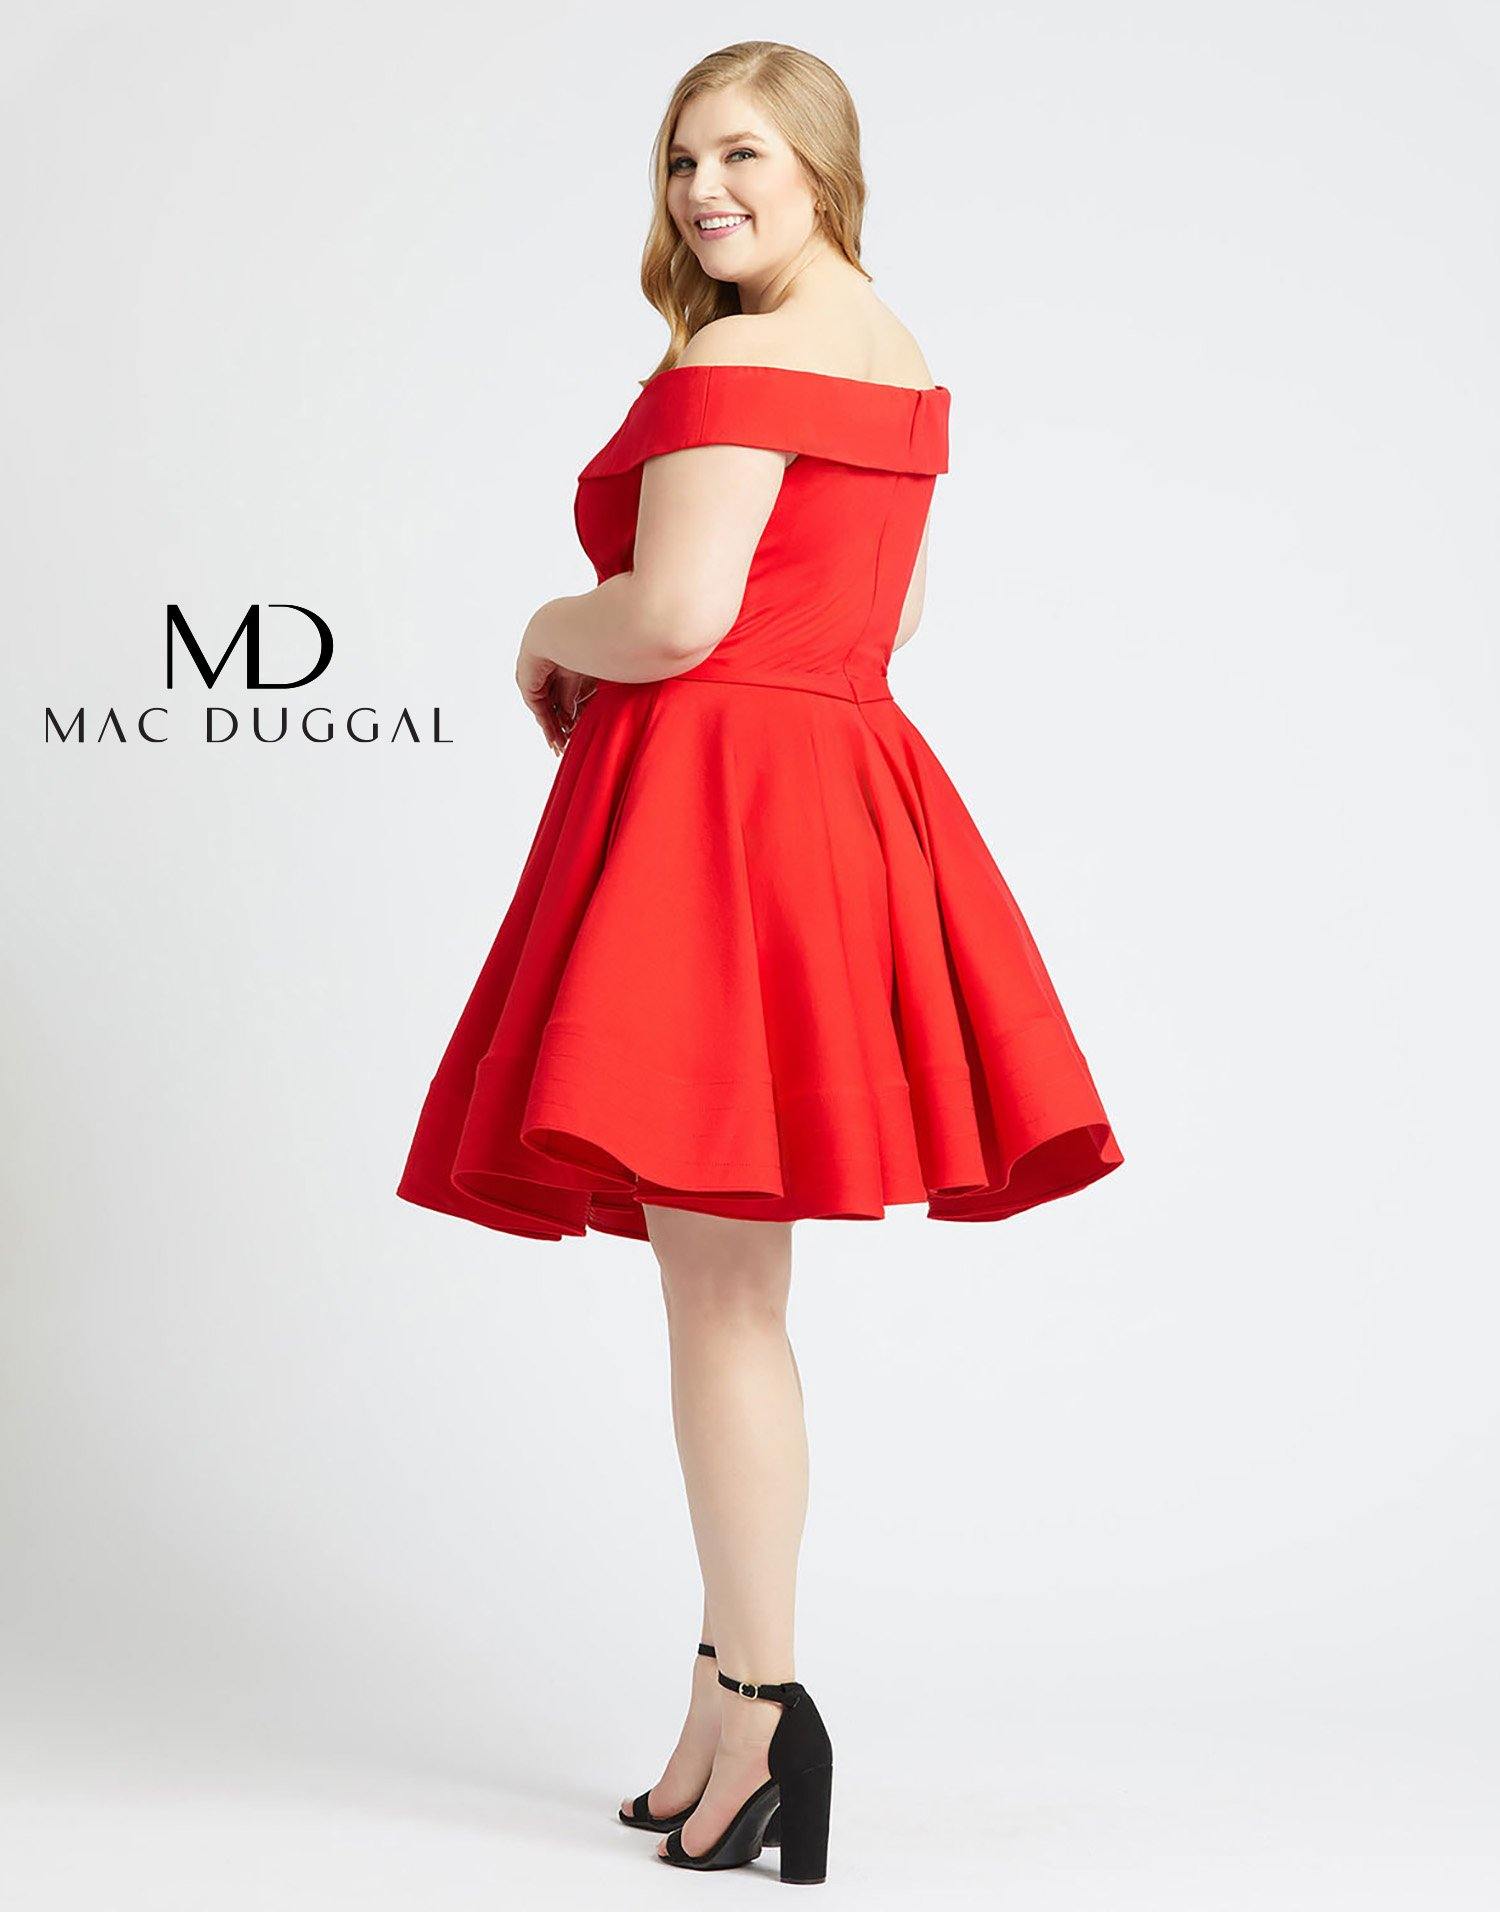 Mac Duggal Fabulous Short Plus Size Cocktail Dress - The Dress Outlet